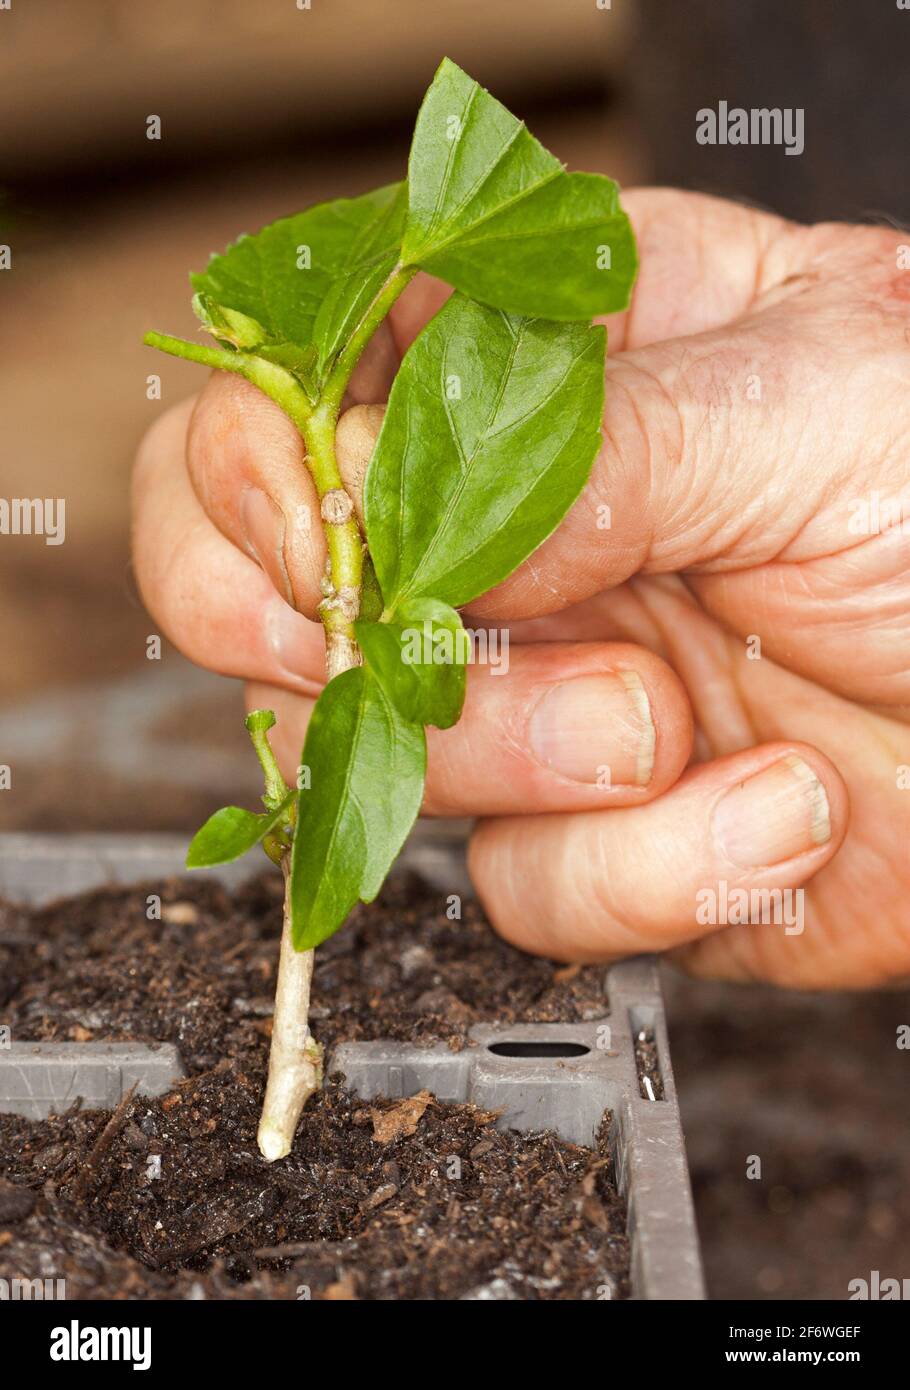 Il taglio del gambo di Hibiscus tenuto nella mano di una persona e comincia piantato in suolo in vassoio di propagazione Foto Stock